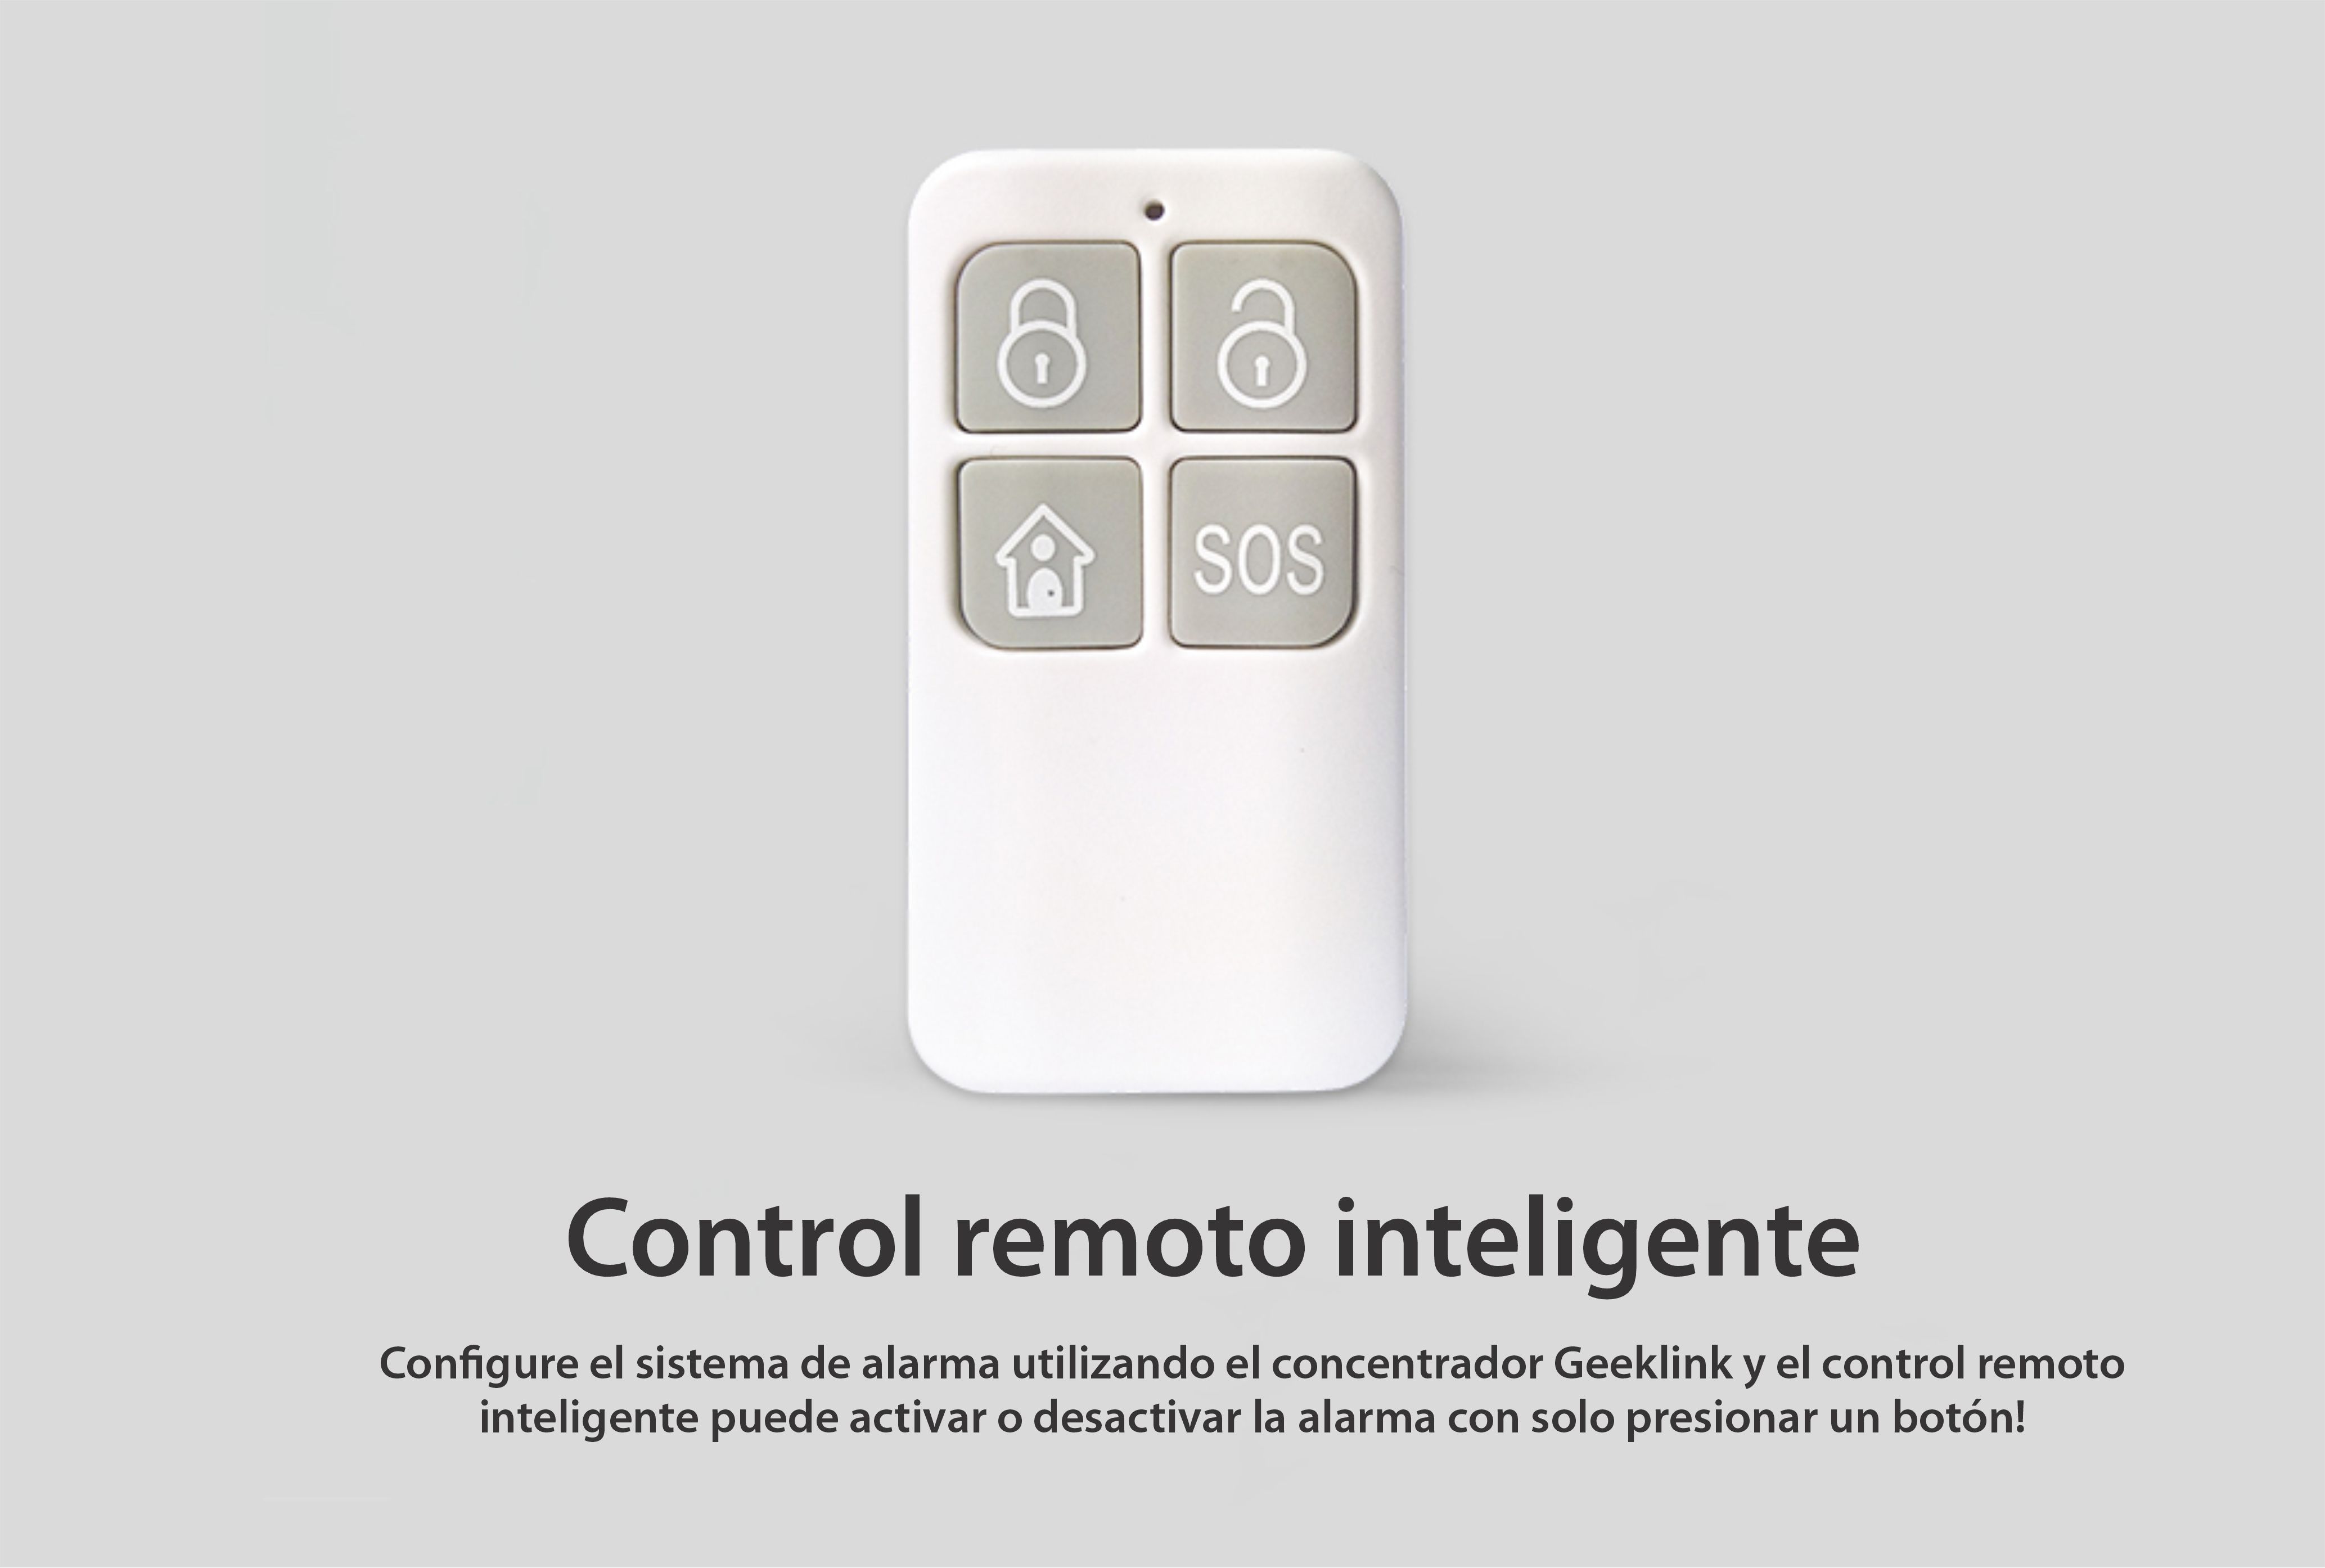 Control remoto inteligente Geeklink, wi-fi, función SOS